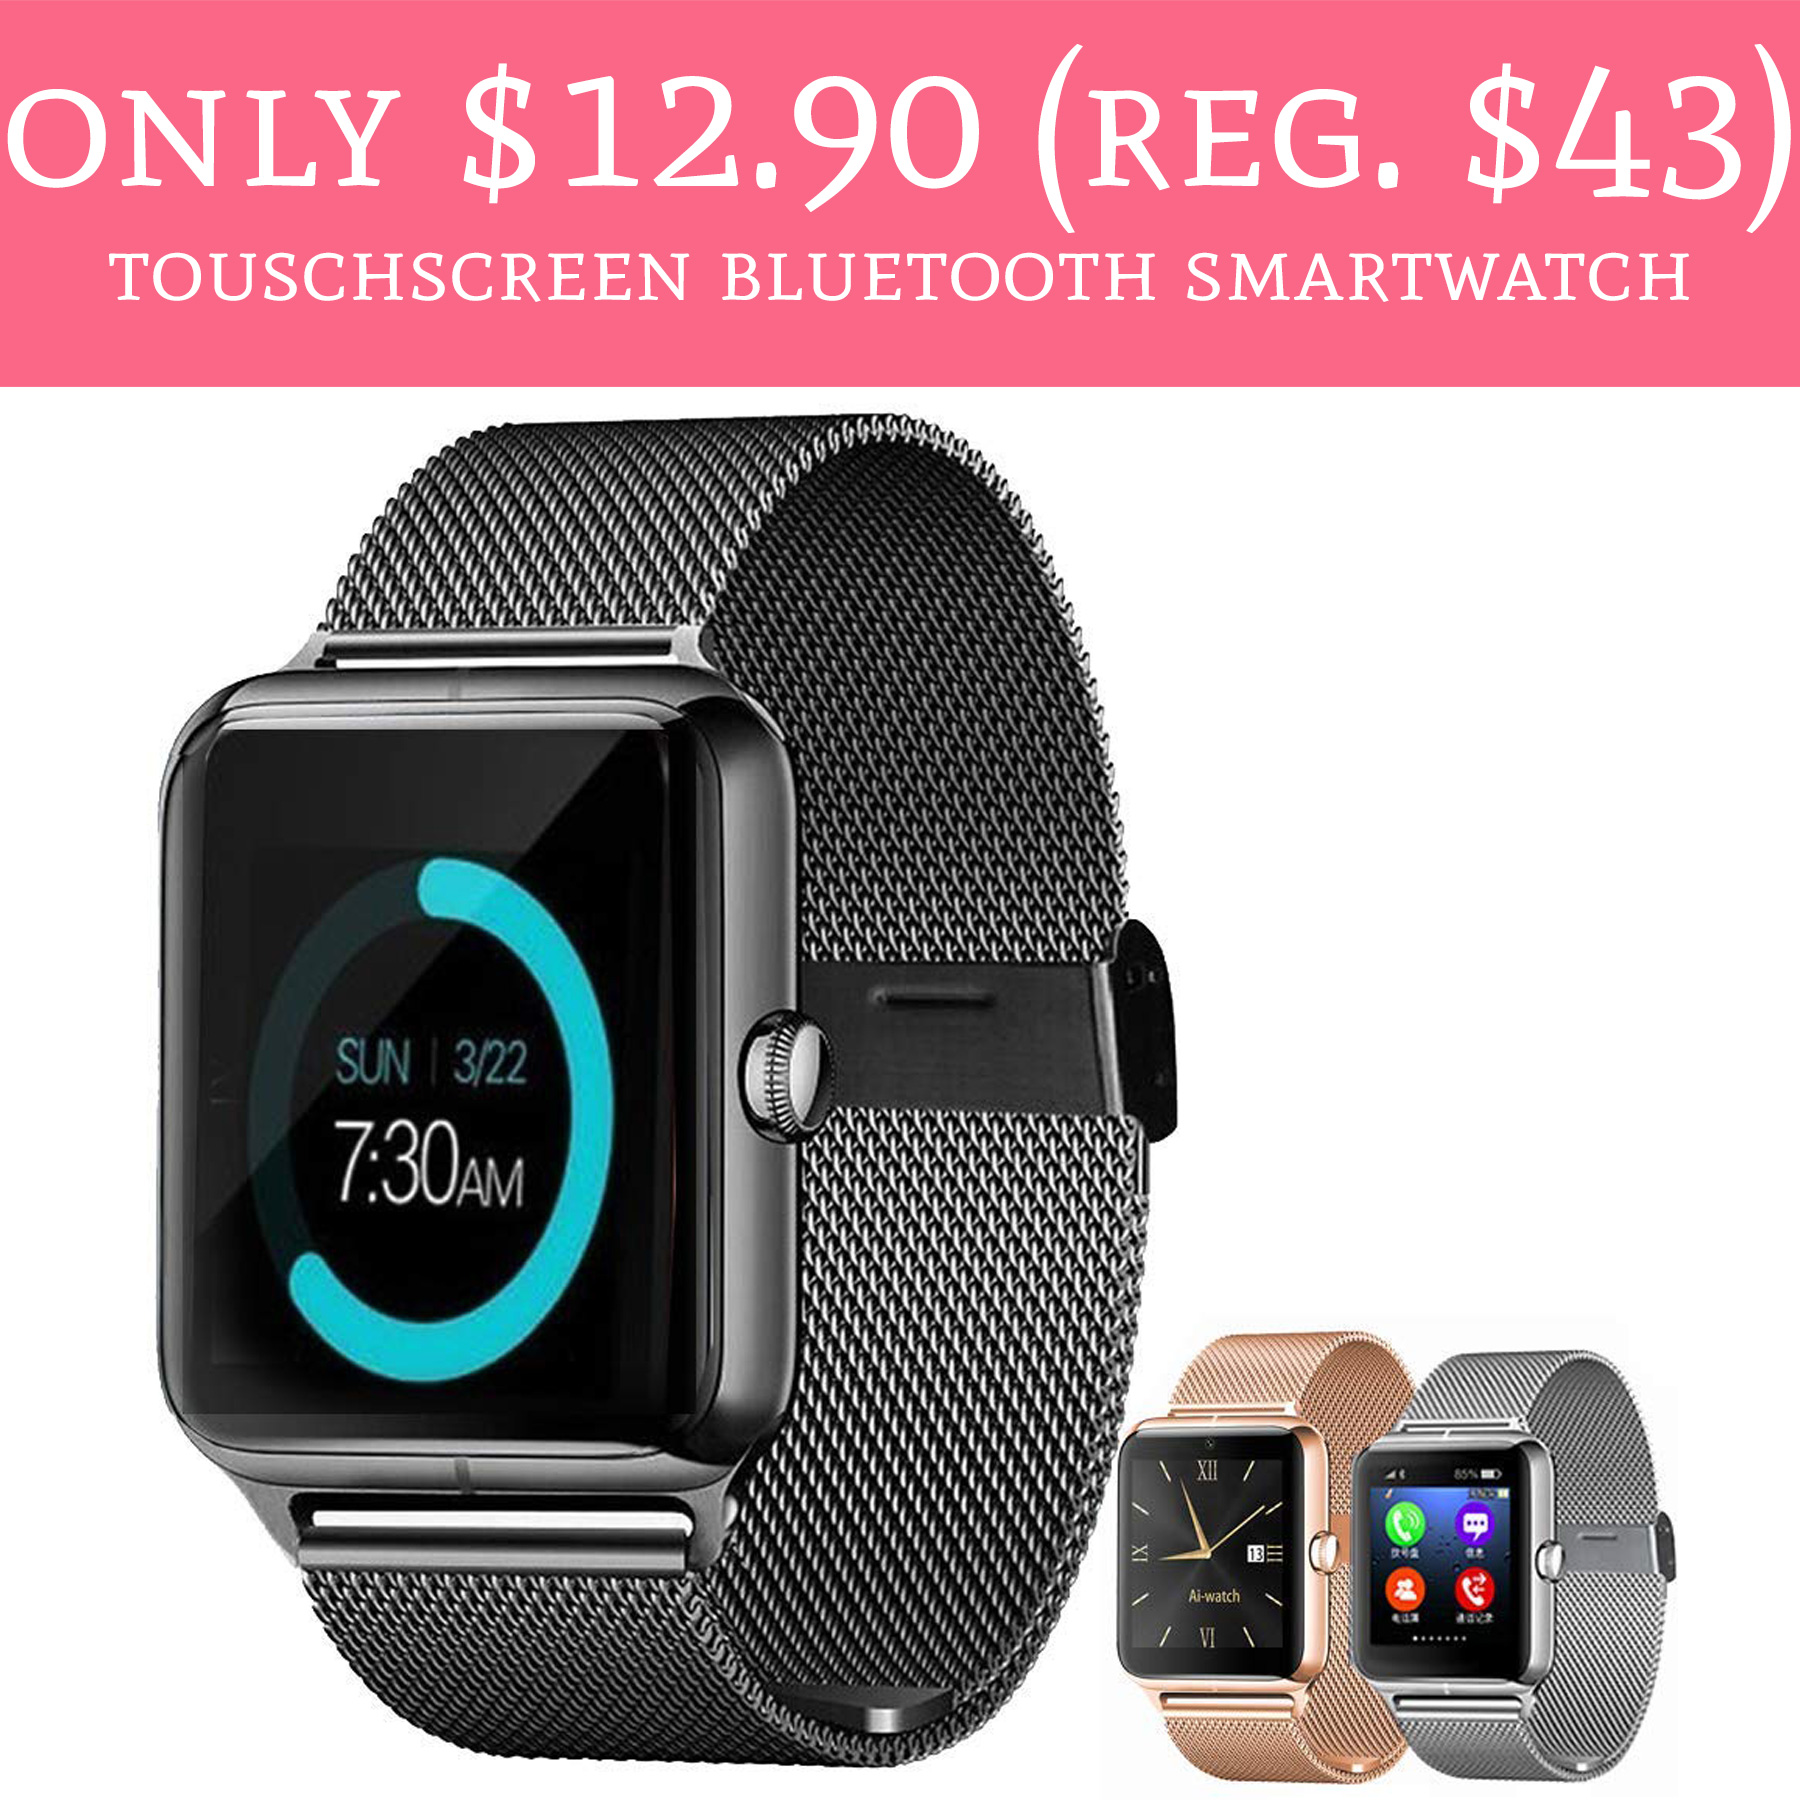 touchscreen-bluetooth-smartwatch